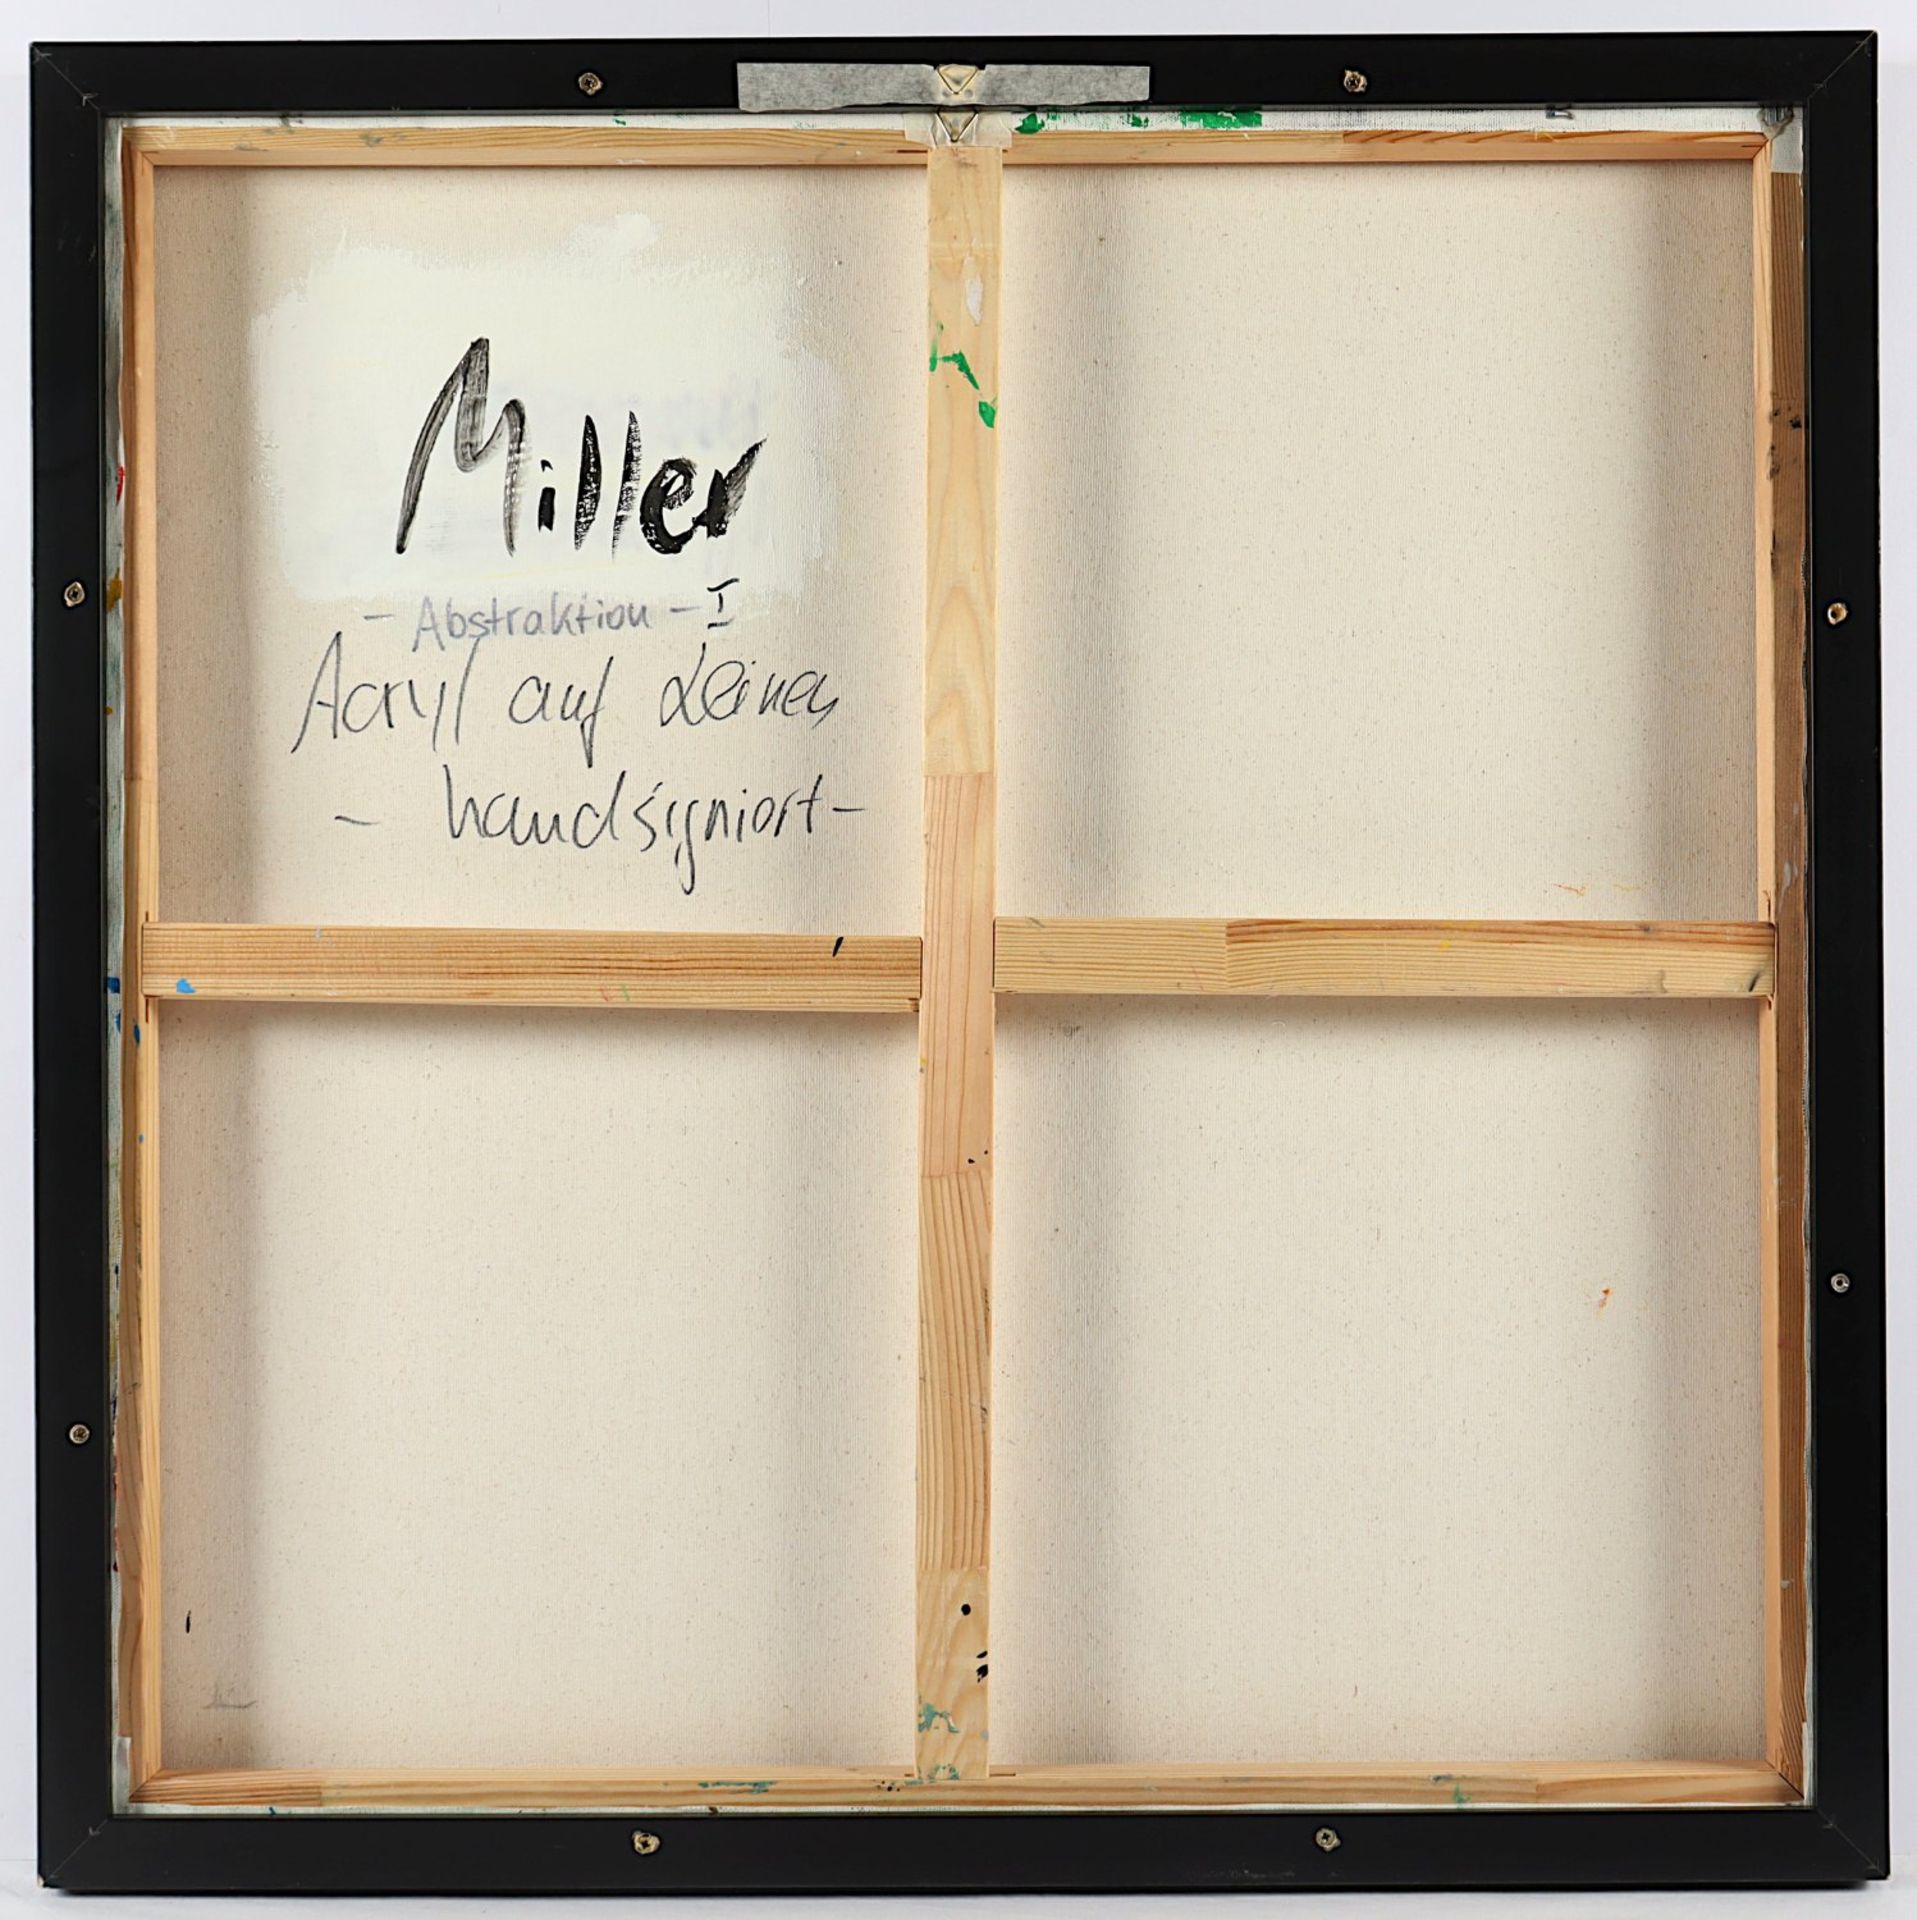 MILLER, C., "Abstraktion I", - Image 2 of 2